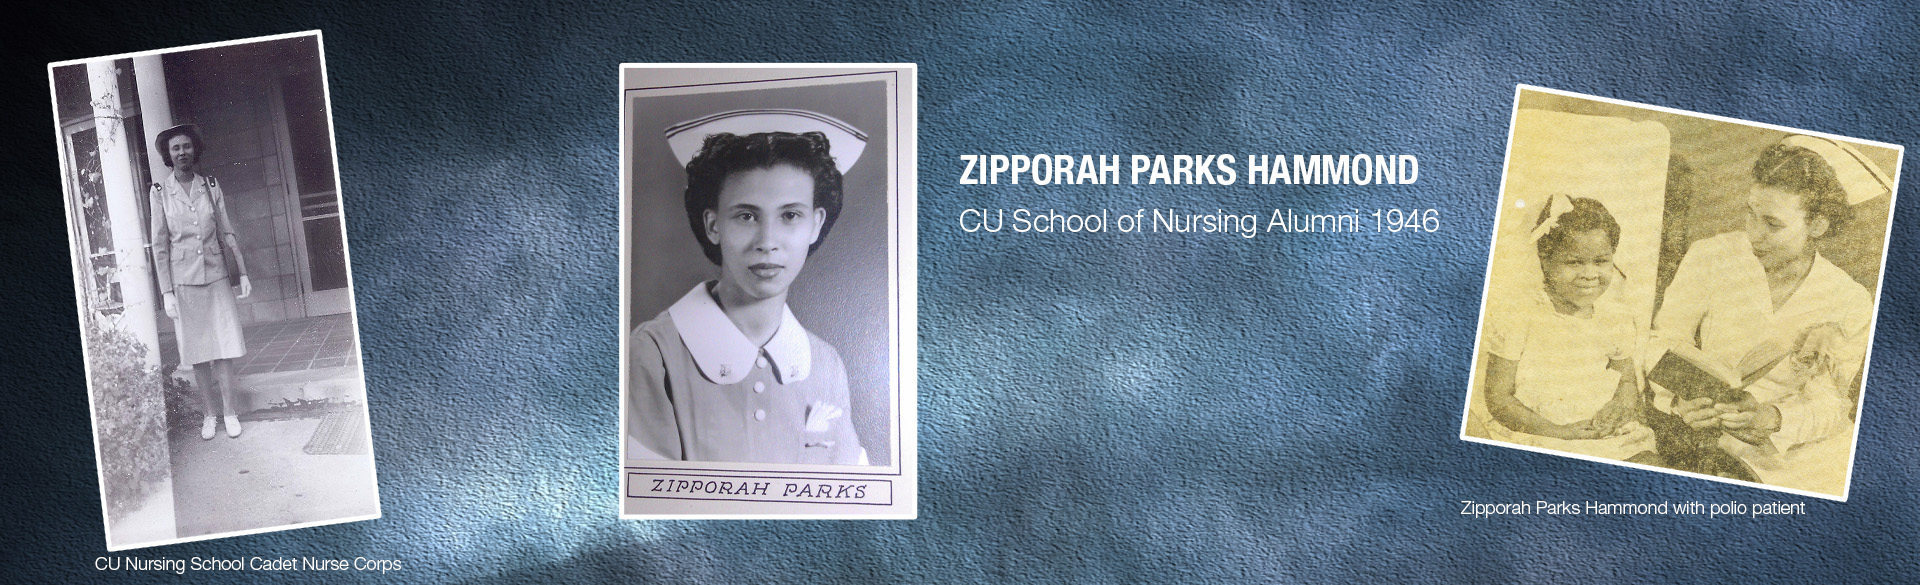 CU College of Nursing alumni Zipporah Parks Hammond